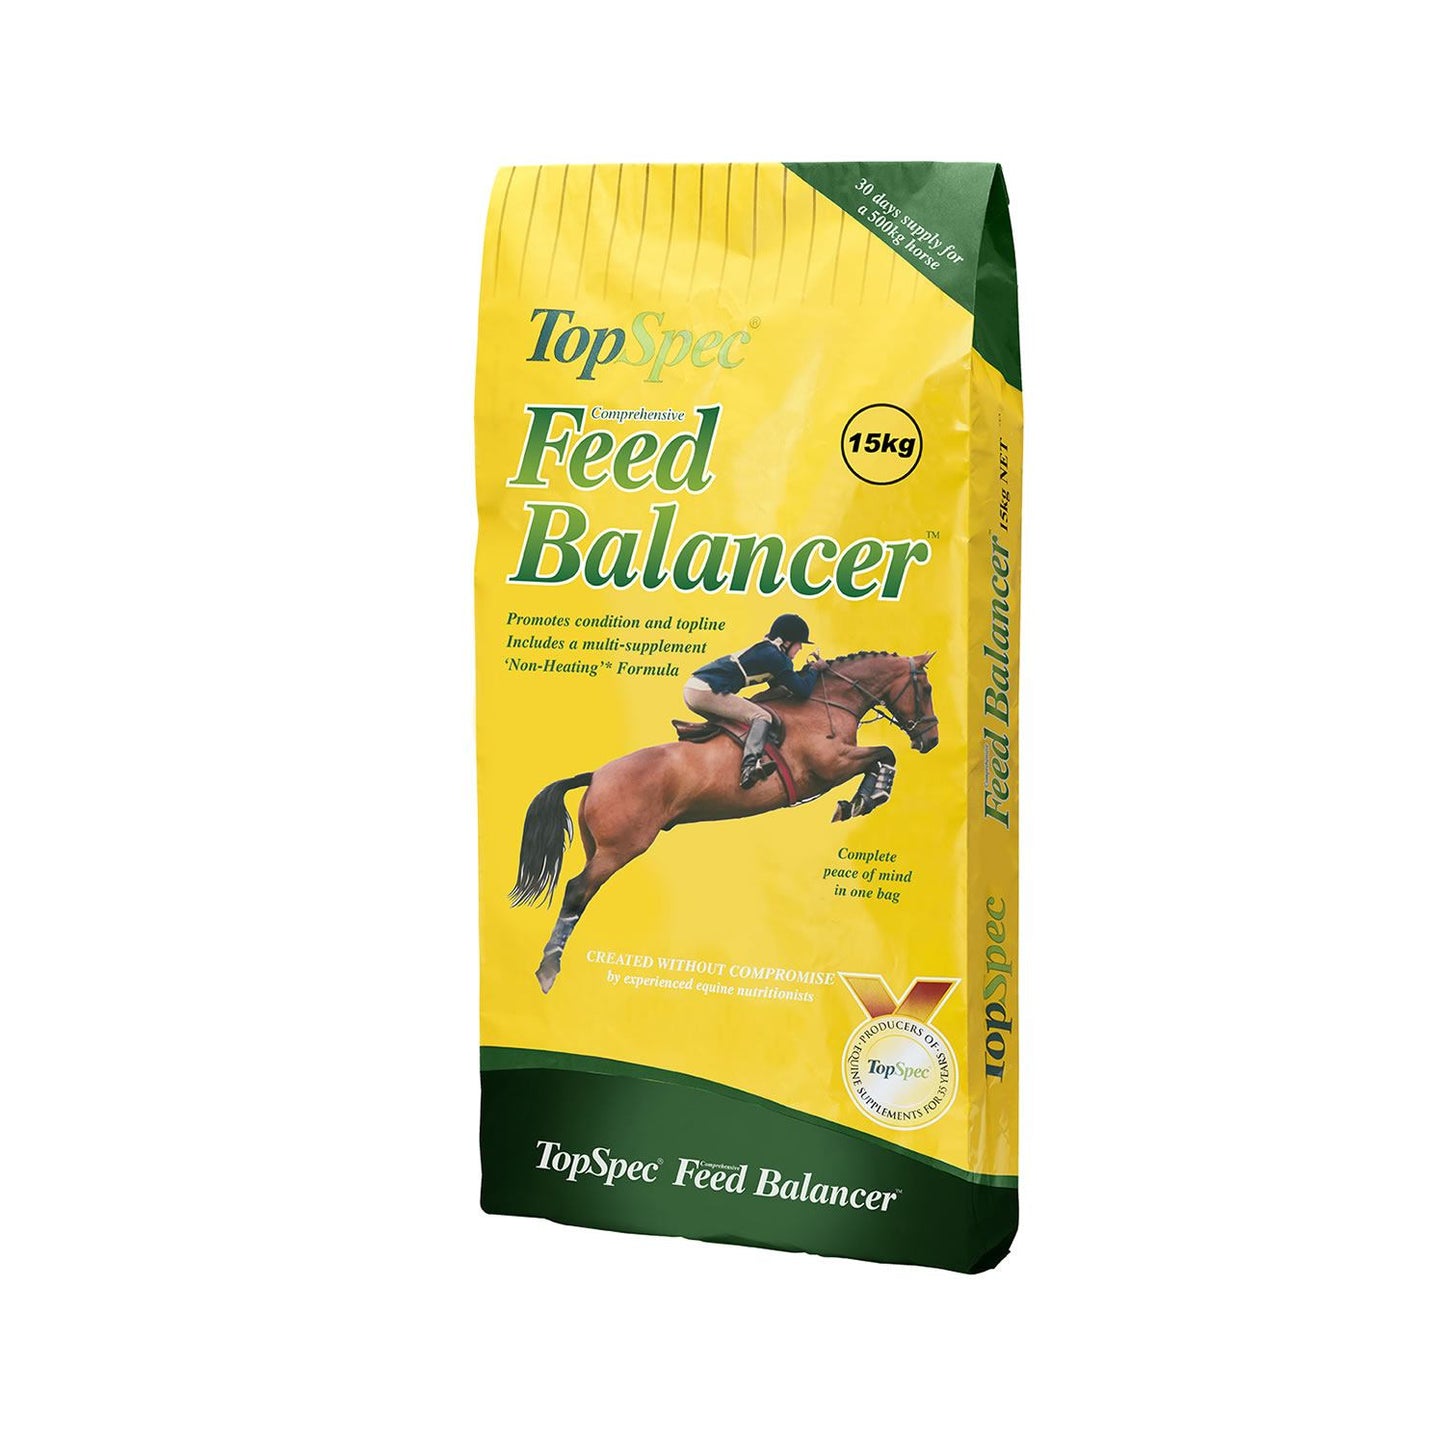 TopSpec Comprehensive Feed Balancer for Horses 15KG